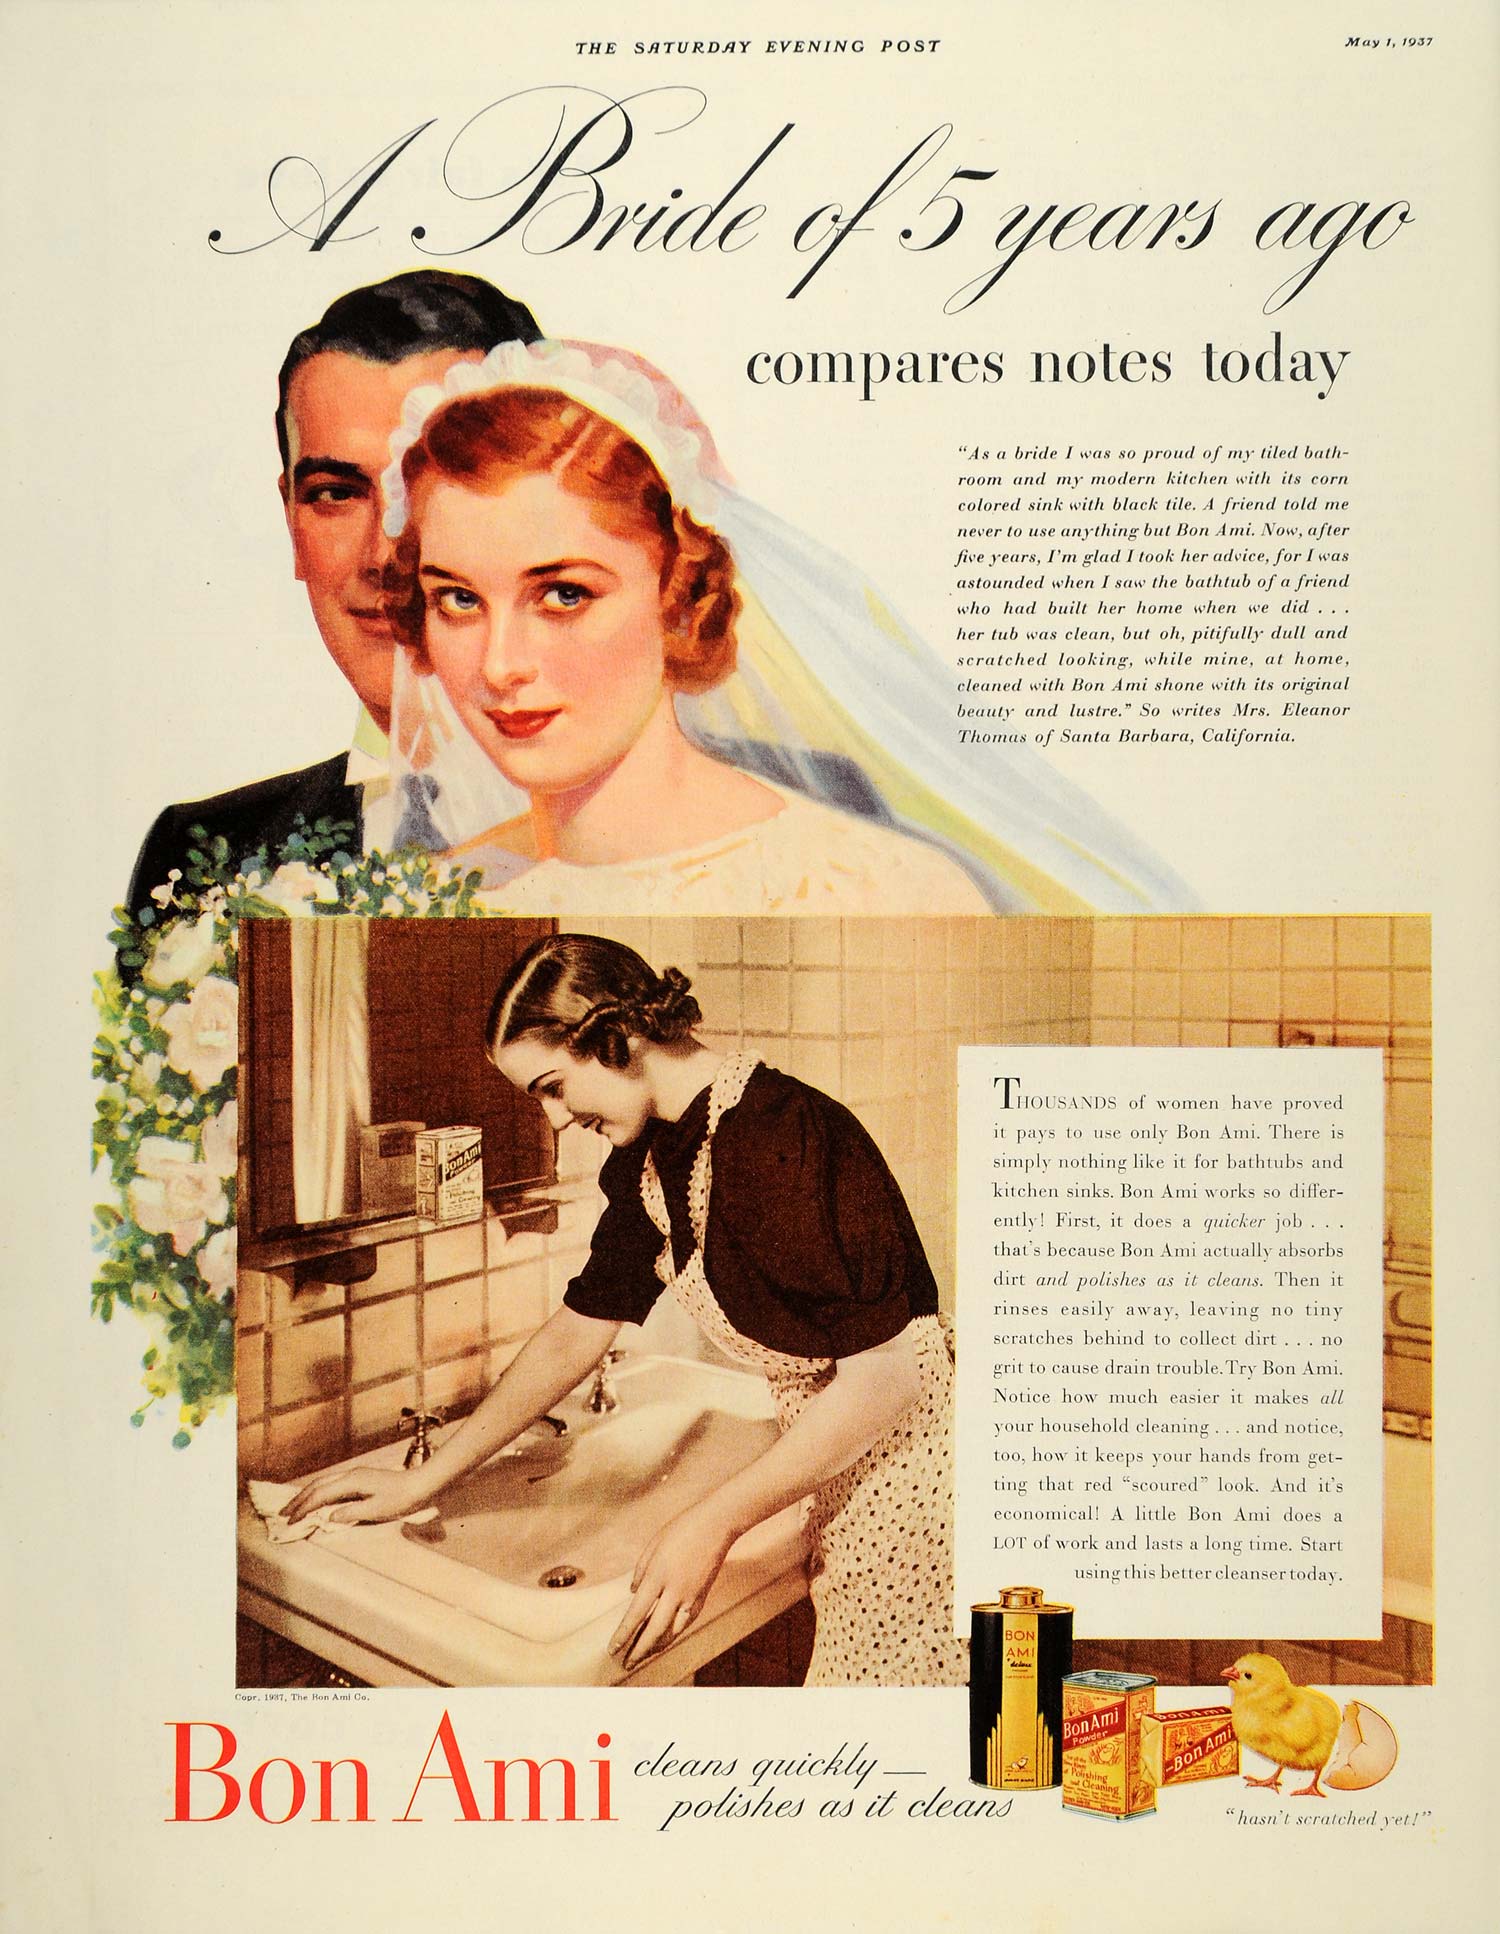 1937 Ad Bon Ami Bride Santa Barbara Eleanor Thomas - ORIGINAL ADVERTISING SEP4